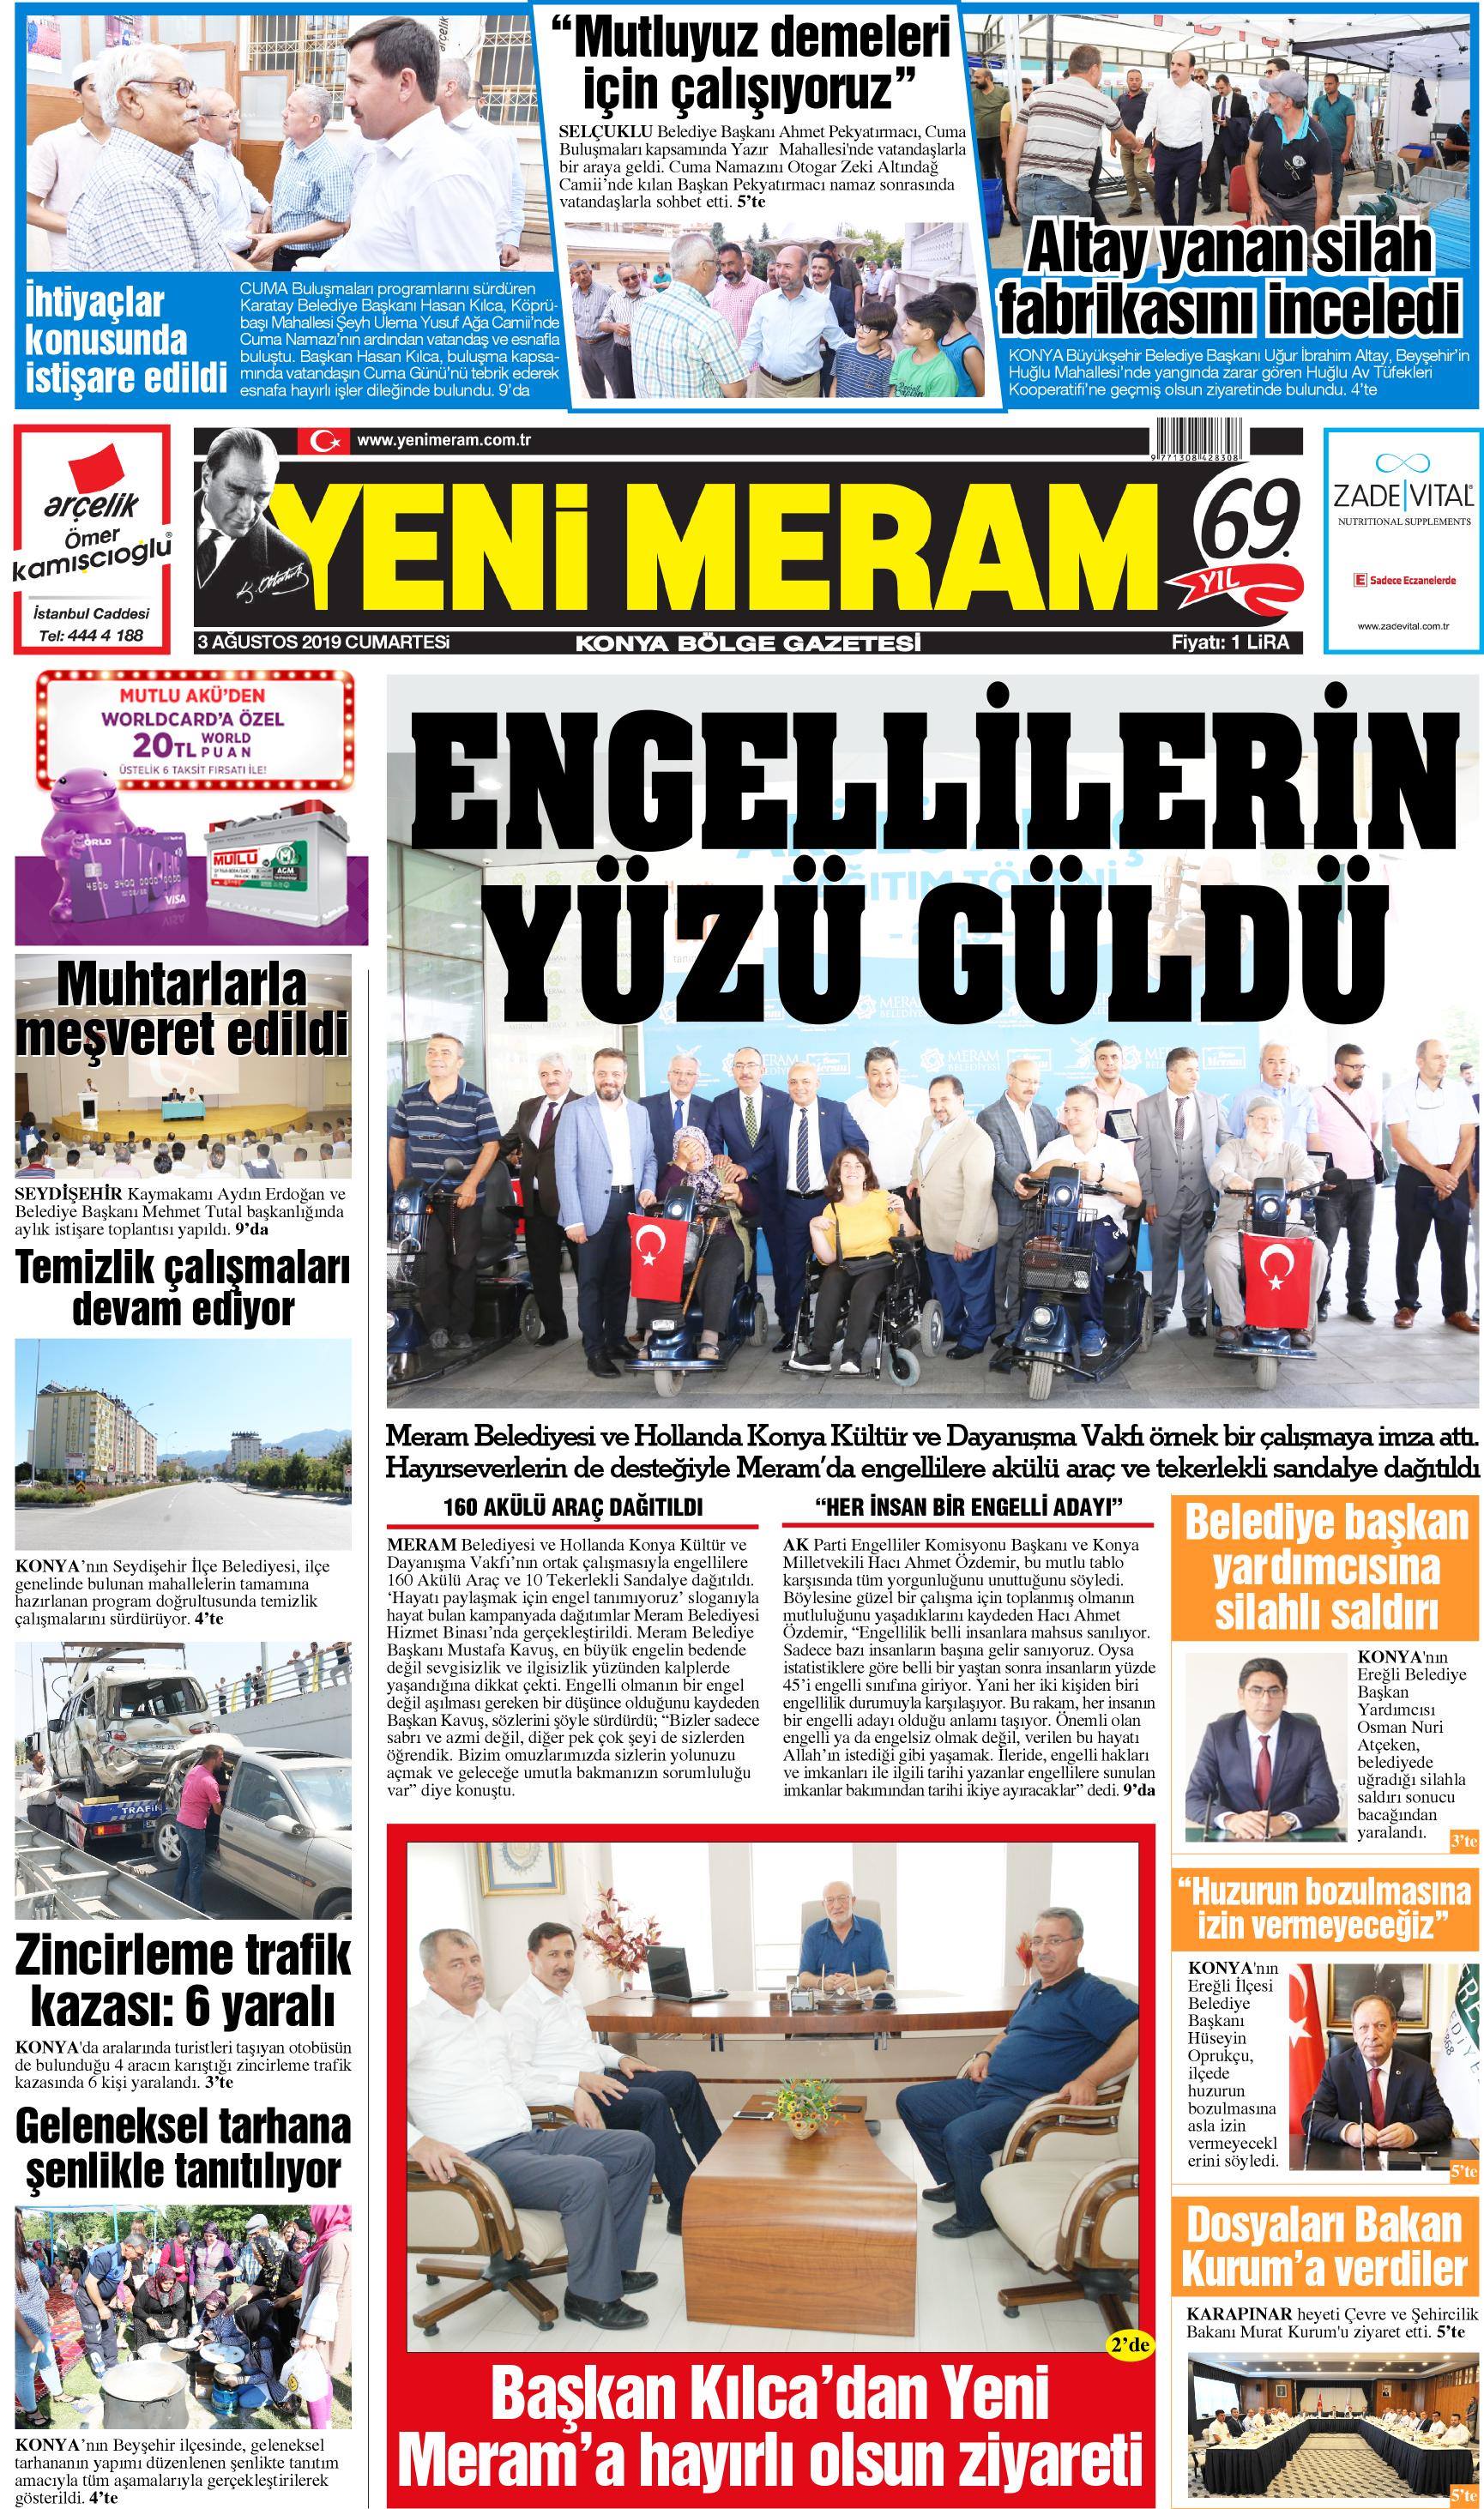 3 Ağustos 2019 Yeni Meram Gazetesi